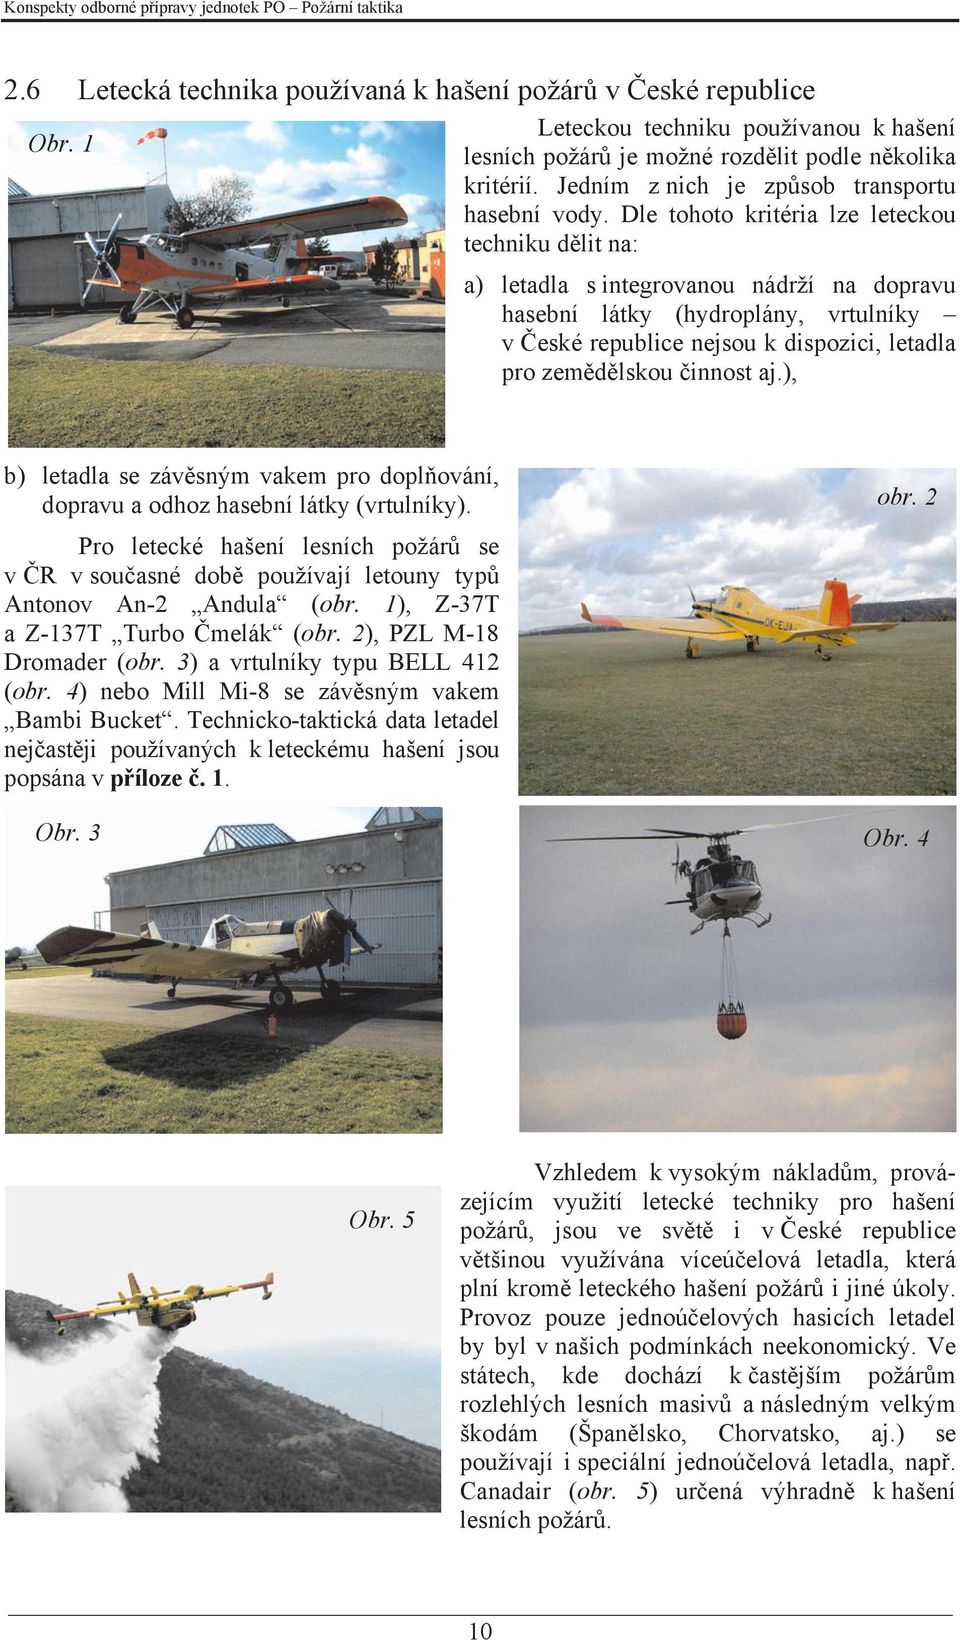 Dle tohoto kritéria lze leteckou techniku dělit na: a) letadla s integrovanou nádrží na dopravu hasební látky (hydroplány, vrtulníky v České republice nejsou k dispozici, letadla pro zemědělskou